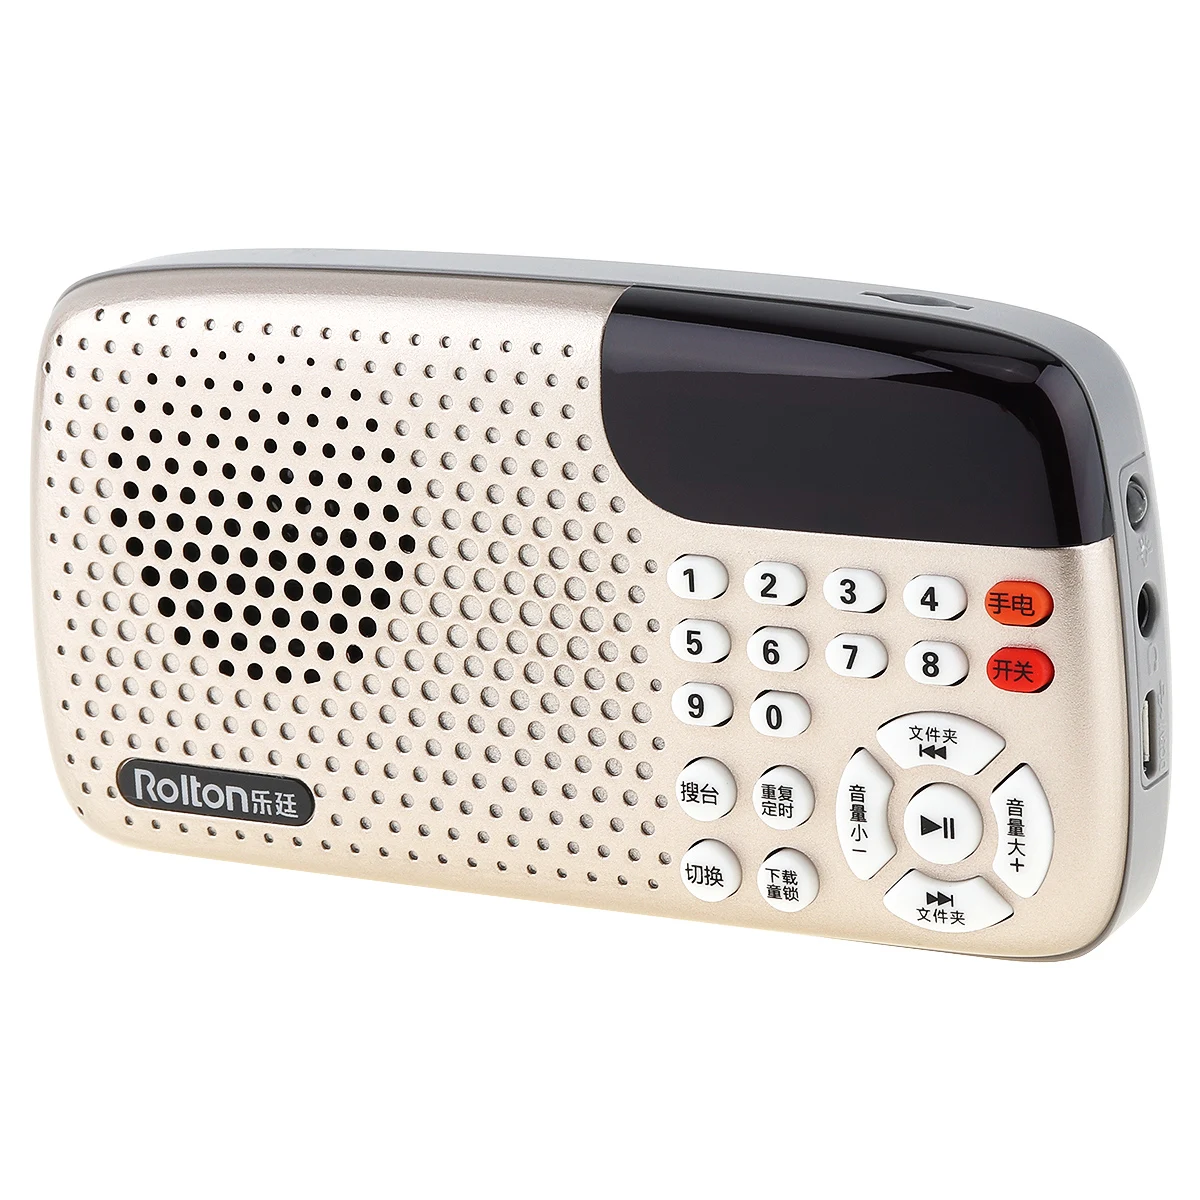 Rolton W105 мини USB FM радио динамик со светодиодный MP3 музыкальный плеер/фонарь лампа/Проверка денег для взрослых/детей